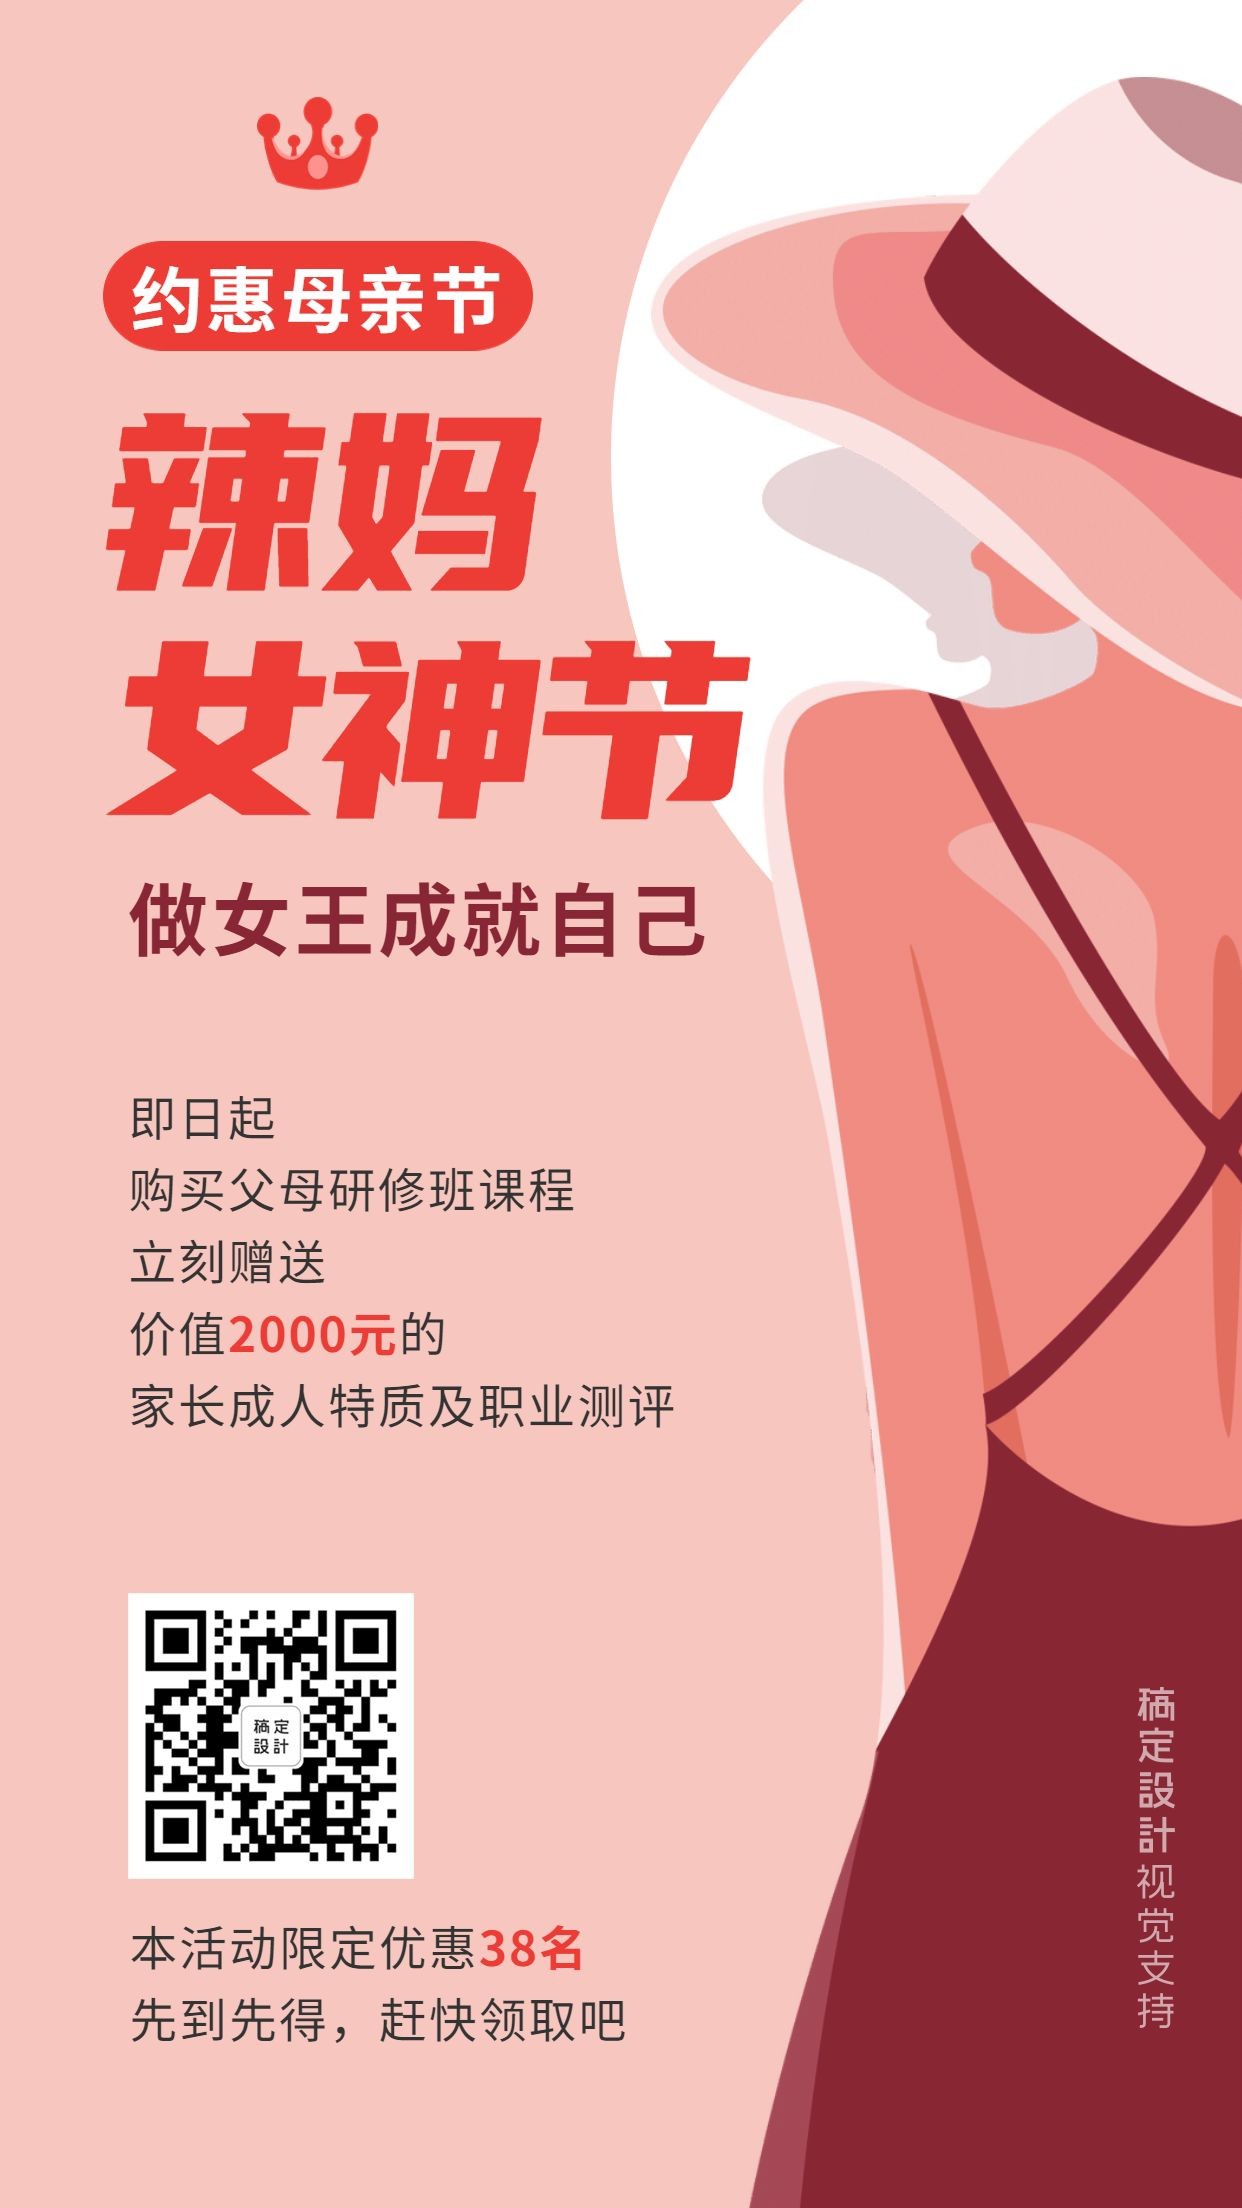 38三八妇女节促销课程宣传海报预览效果